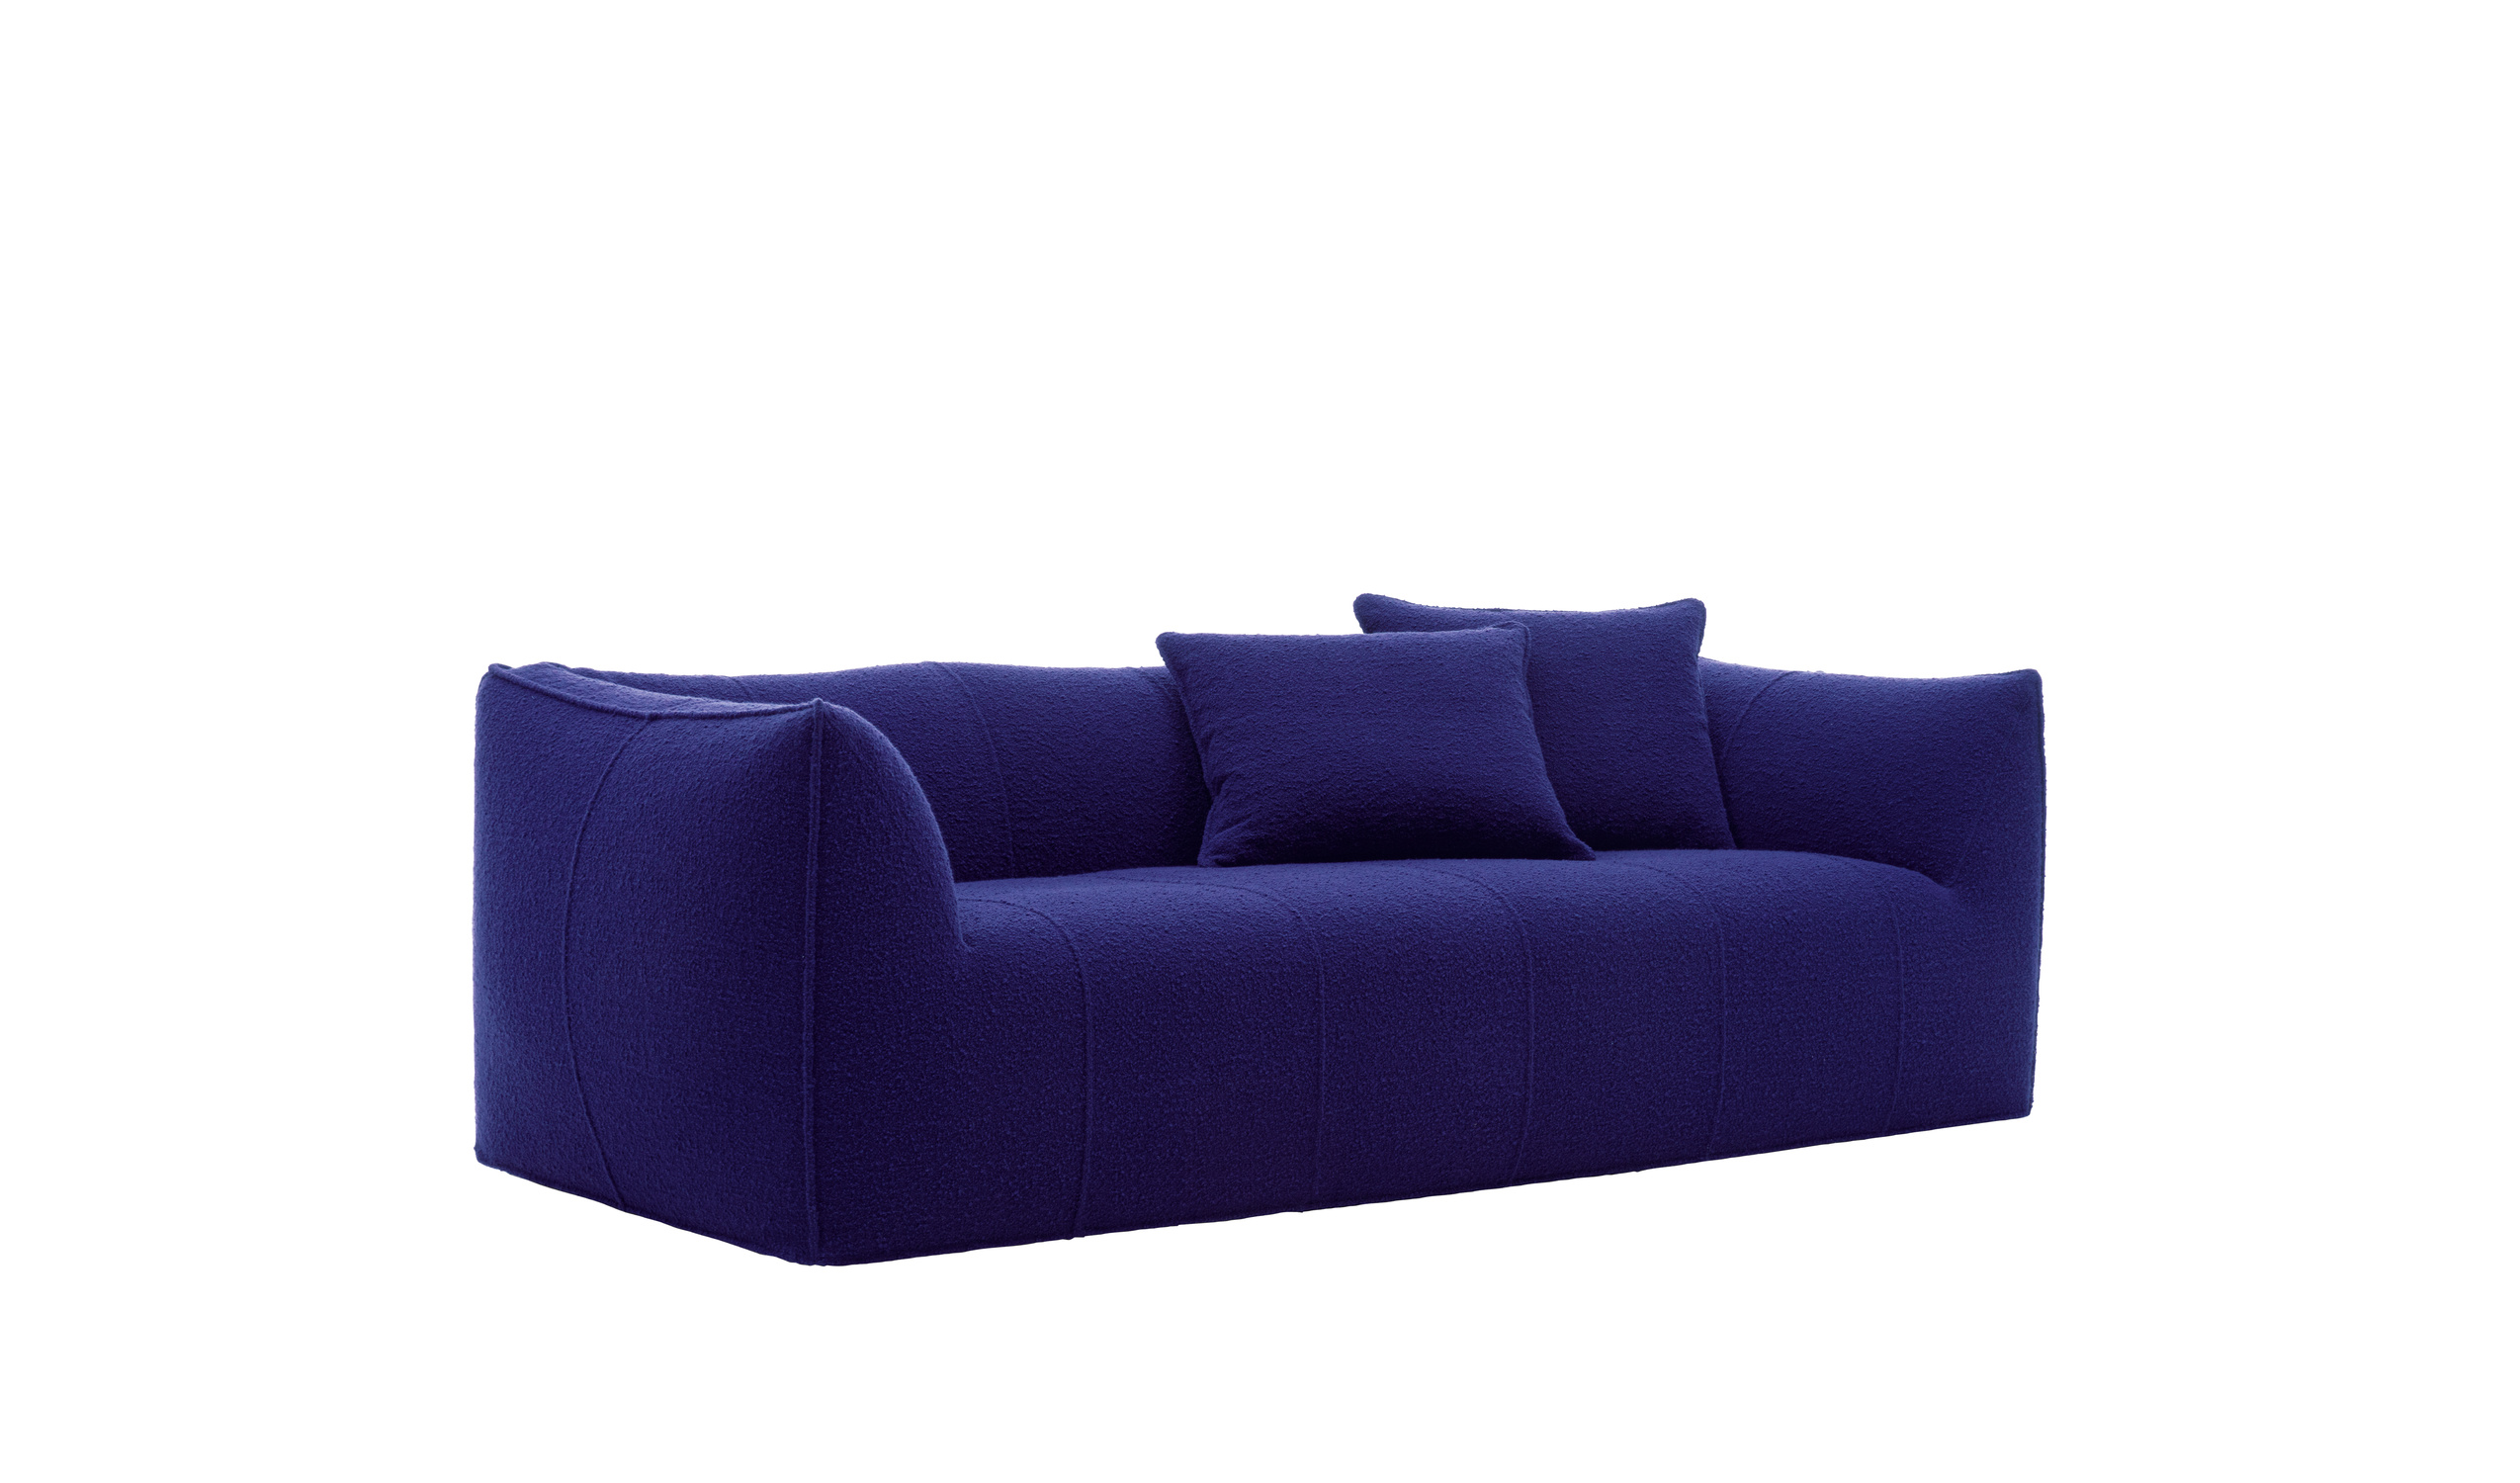 Modern designer italian sofas - Le Bambole Sofas 1